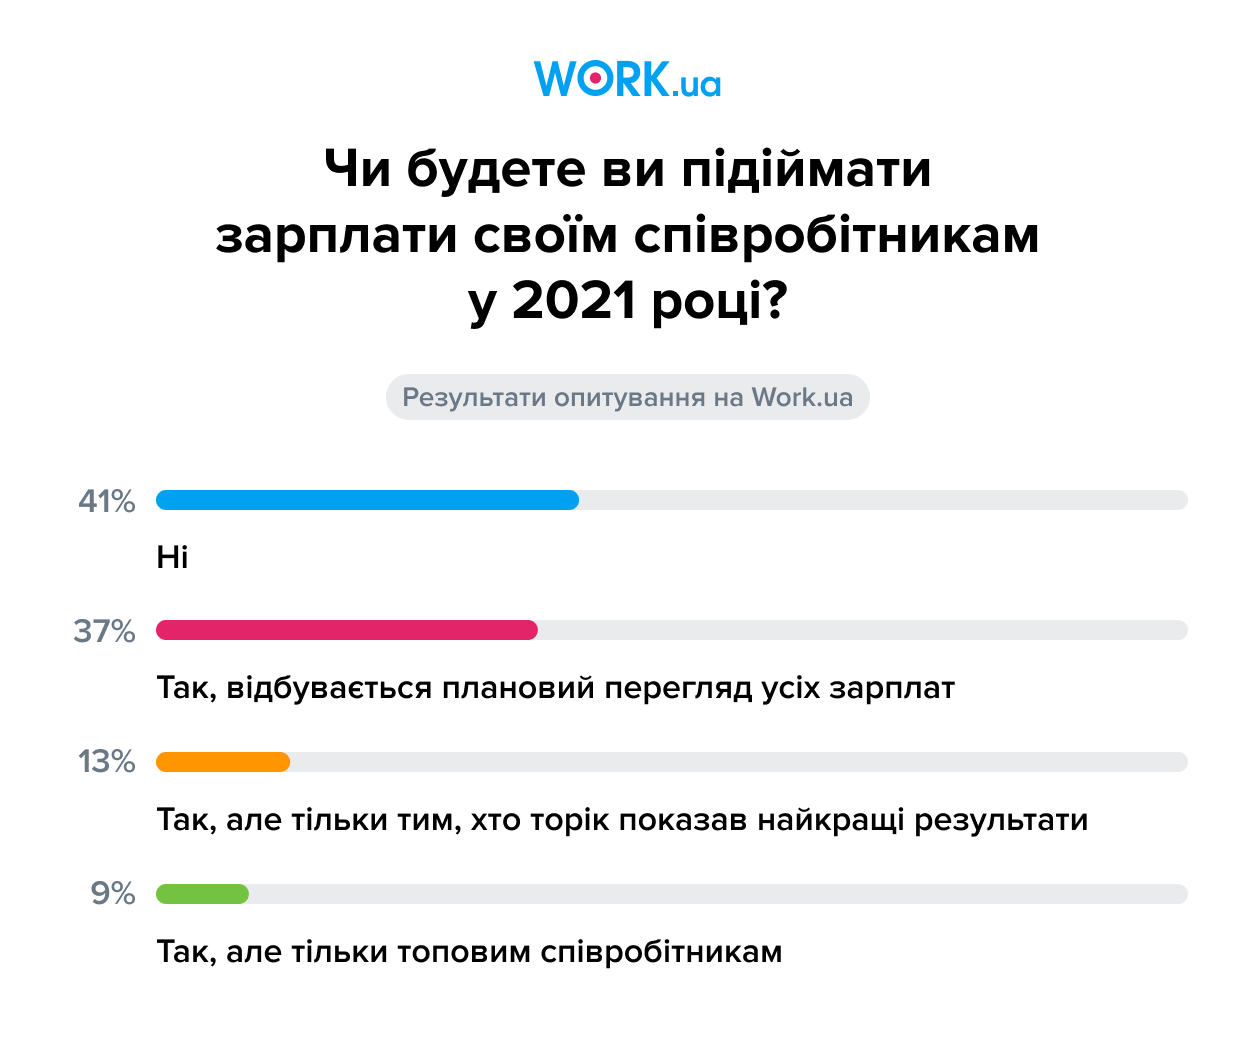 Опитування проводилося у січні 2021. У ньому взяли участь 311 осіб